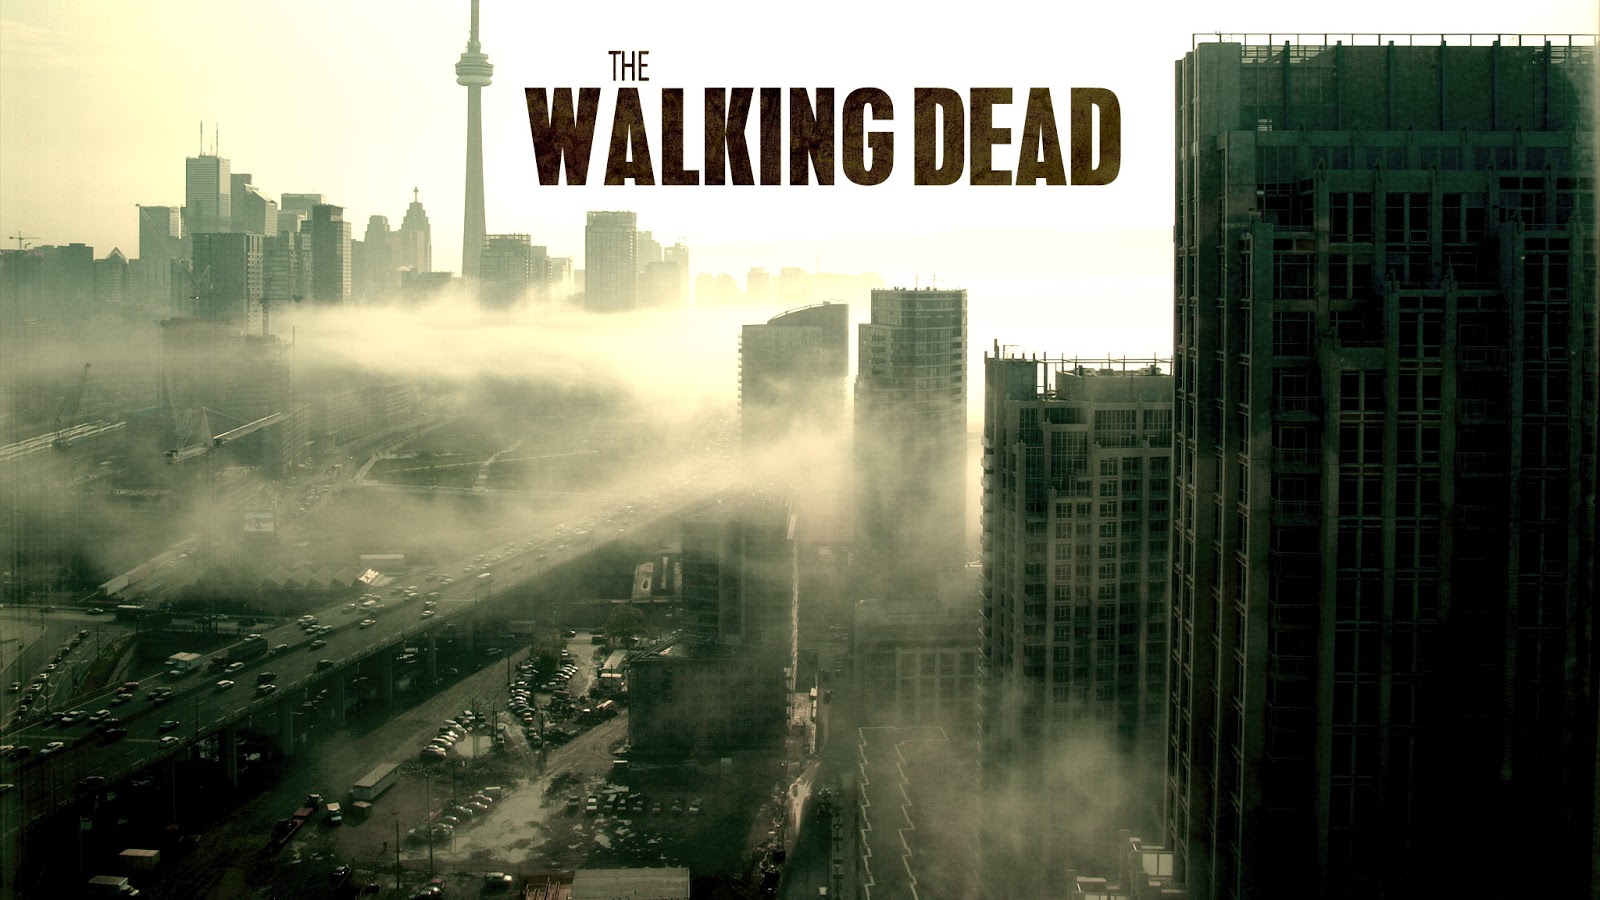 The Walking Dead Season 1 Wallpaper The walking dead season 4